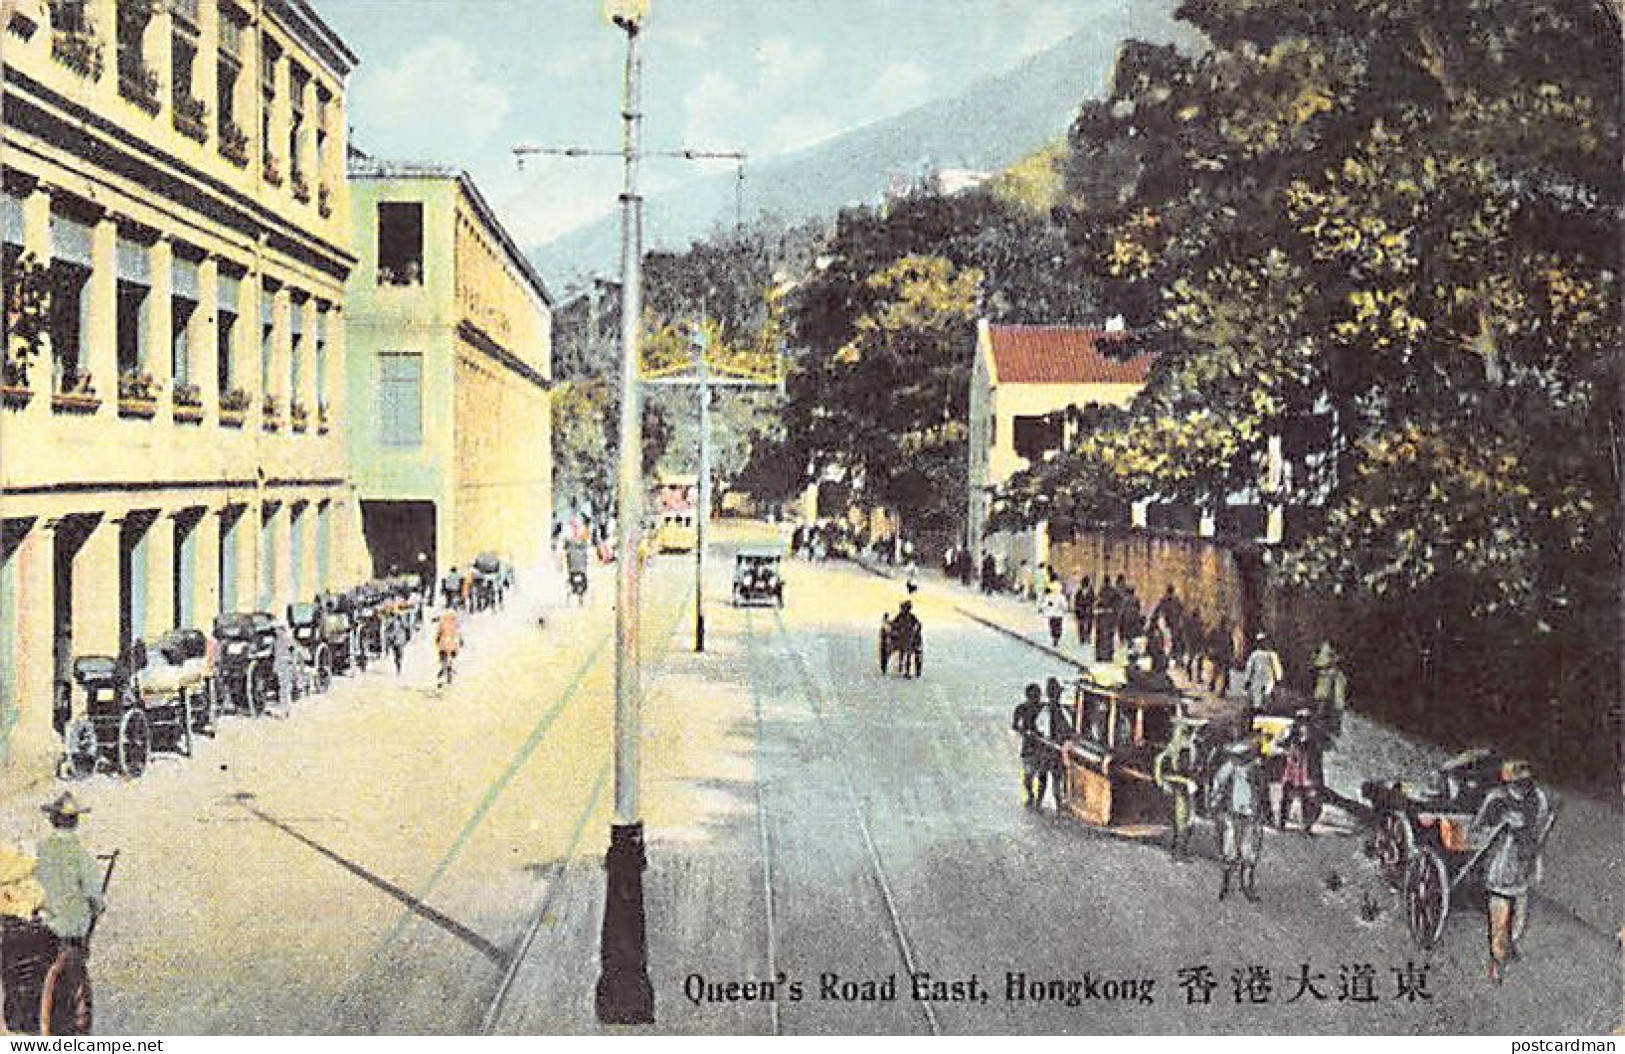 China - HONG KONG - Queen's Road East - Publ. The Graeco Egyptian Tobacco Store 25 - China (Hongkong)